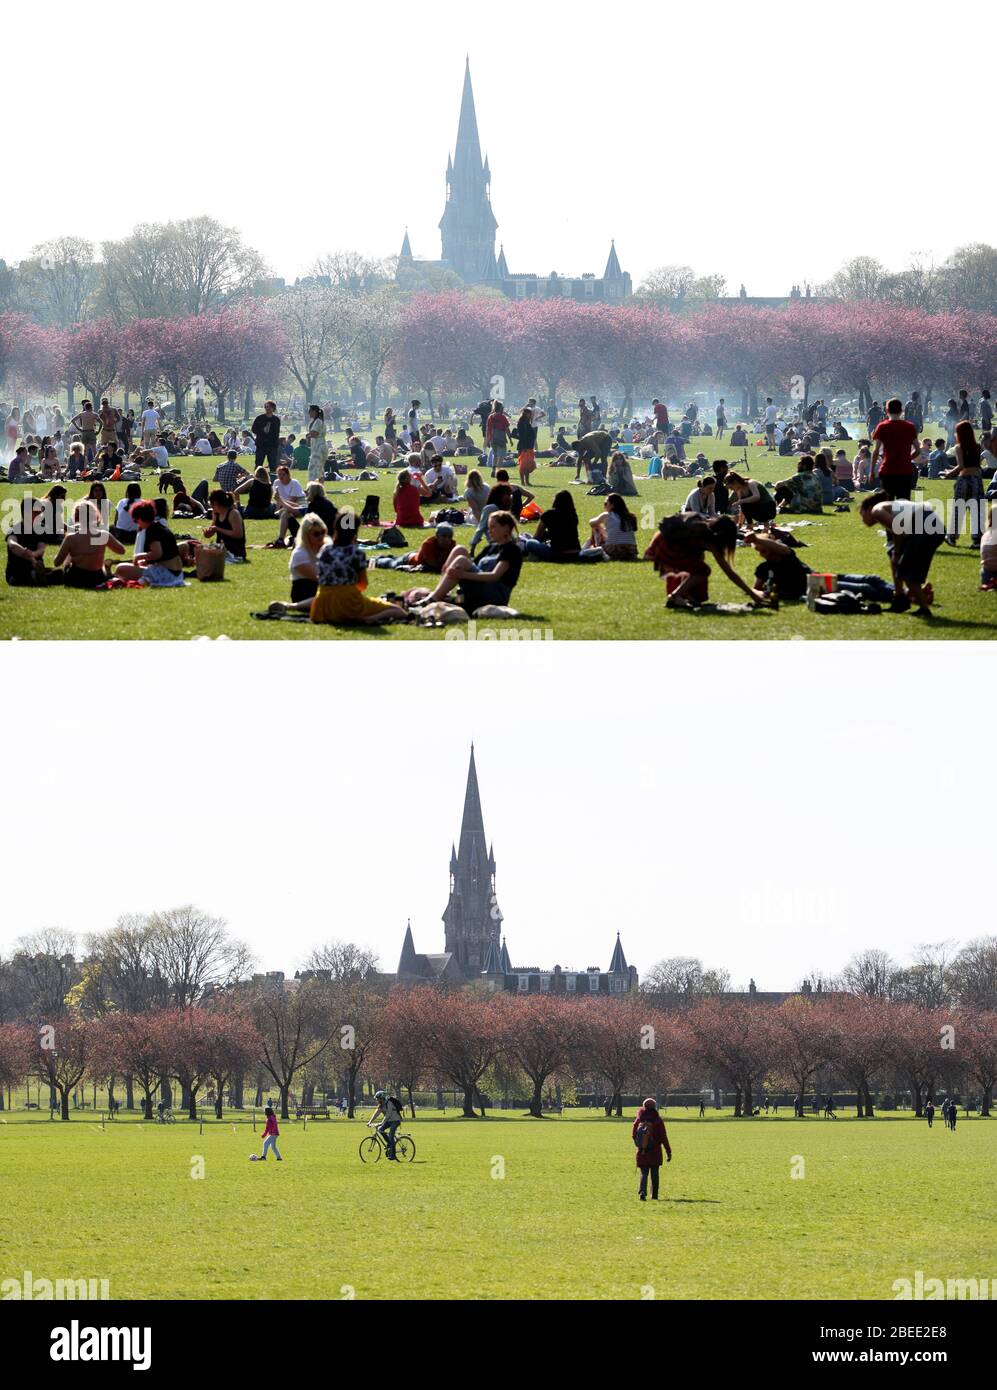 Zusammengesetztes Foto von Menschen, die den Sonnenschein in den Meadows, Edinburgh, während des sonnigen Osterfeiertags Wochenende 22/04/19 (oben) und fast menschenleer heute (unten) genießen, während das Vereinigte Königreich weiterhin in der Sperre, um die Ausbreitung des Coronavirus einzudämmen. Stockfoto